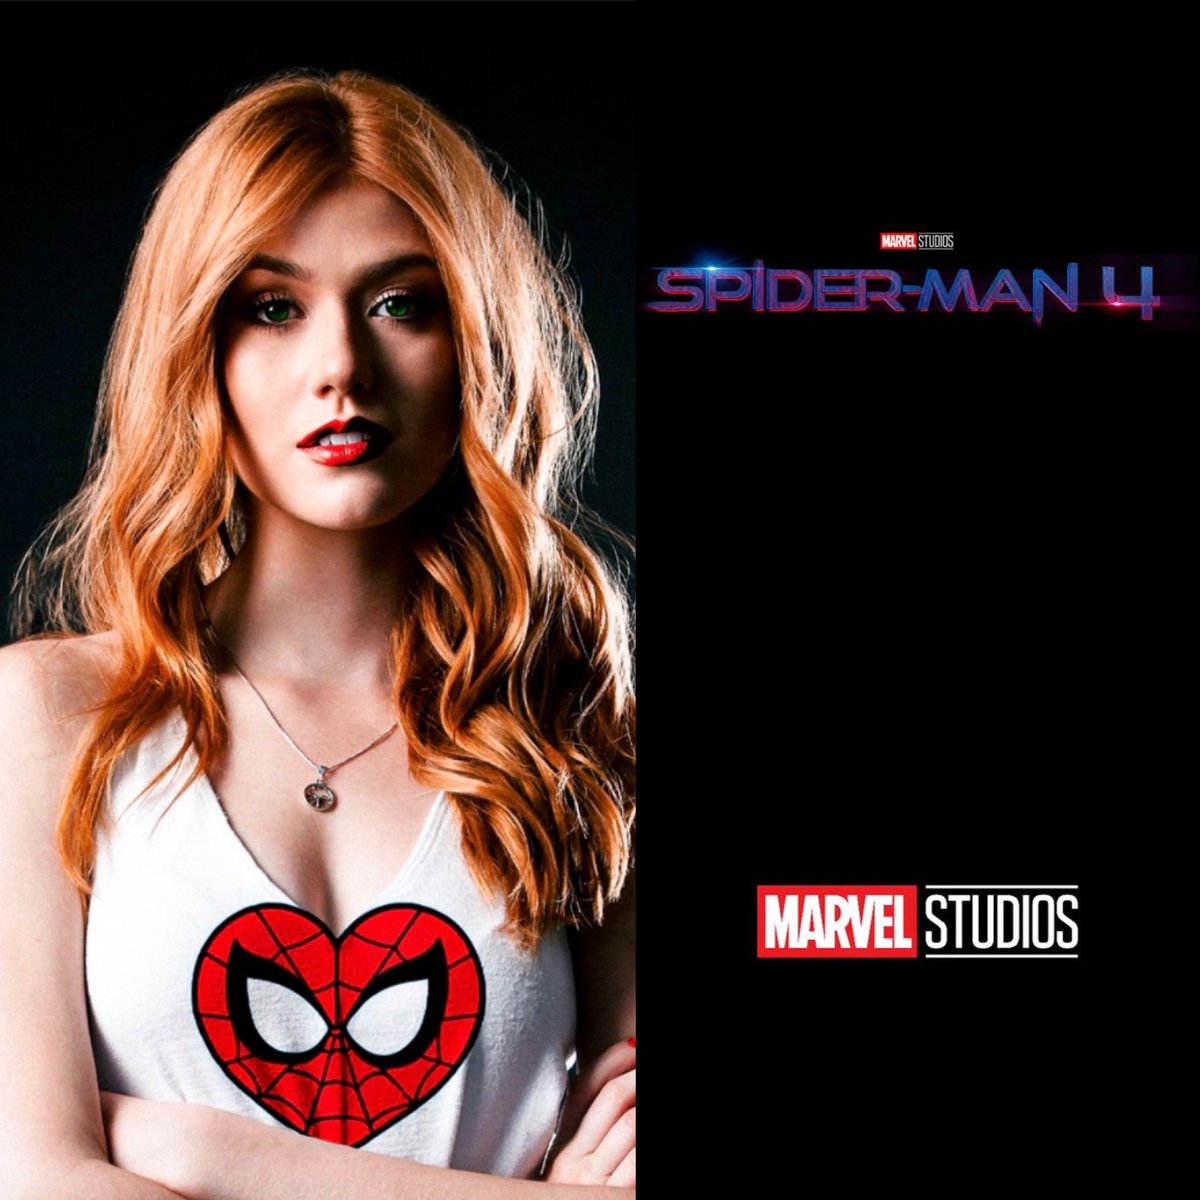 Katherine McNamara play Role as Mary Jane Watson.🕷🕸
#MarvelStudios #Marvel #SpiderMan #PeterParker #TomHolland #MaryJaneWatson #MJWatson #KatherineMcNamara #SpiderManNoWayHome #SpiderMan4 #SpiderMan5 #SpiderMan6 #DevilsReign #PeterXMaryJane #MarvelComics #MCU #MarvelSpiderMan